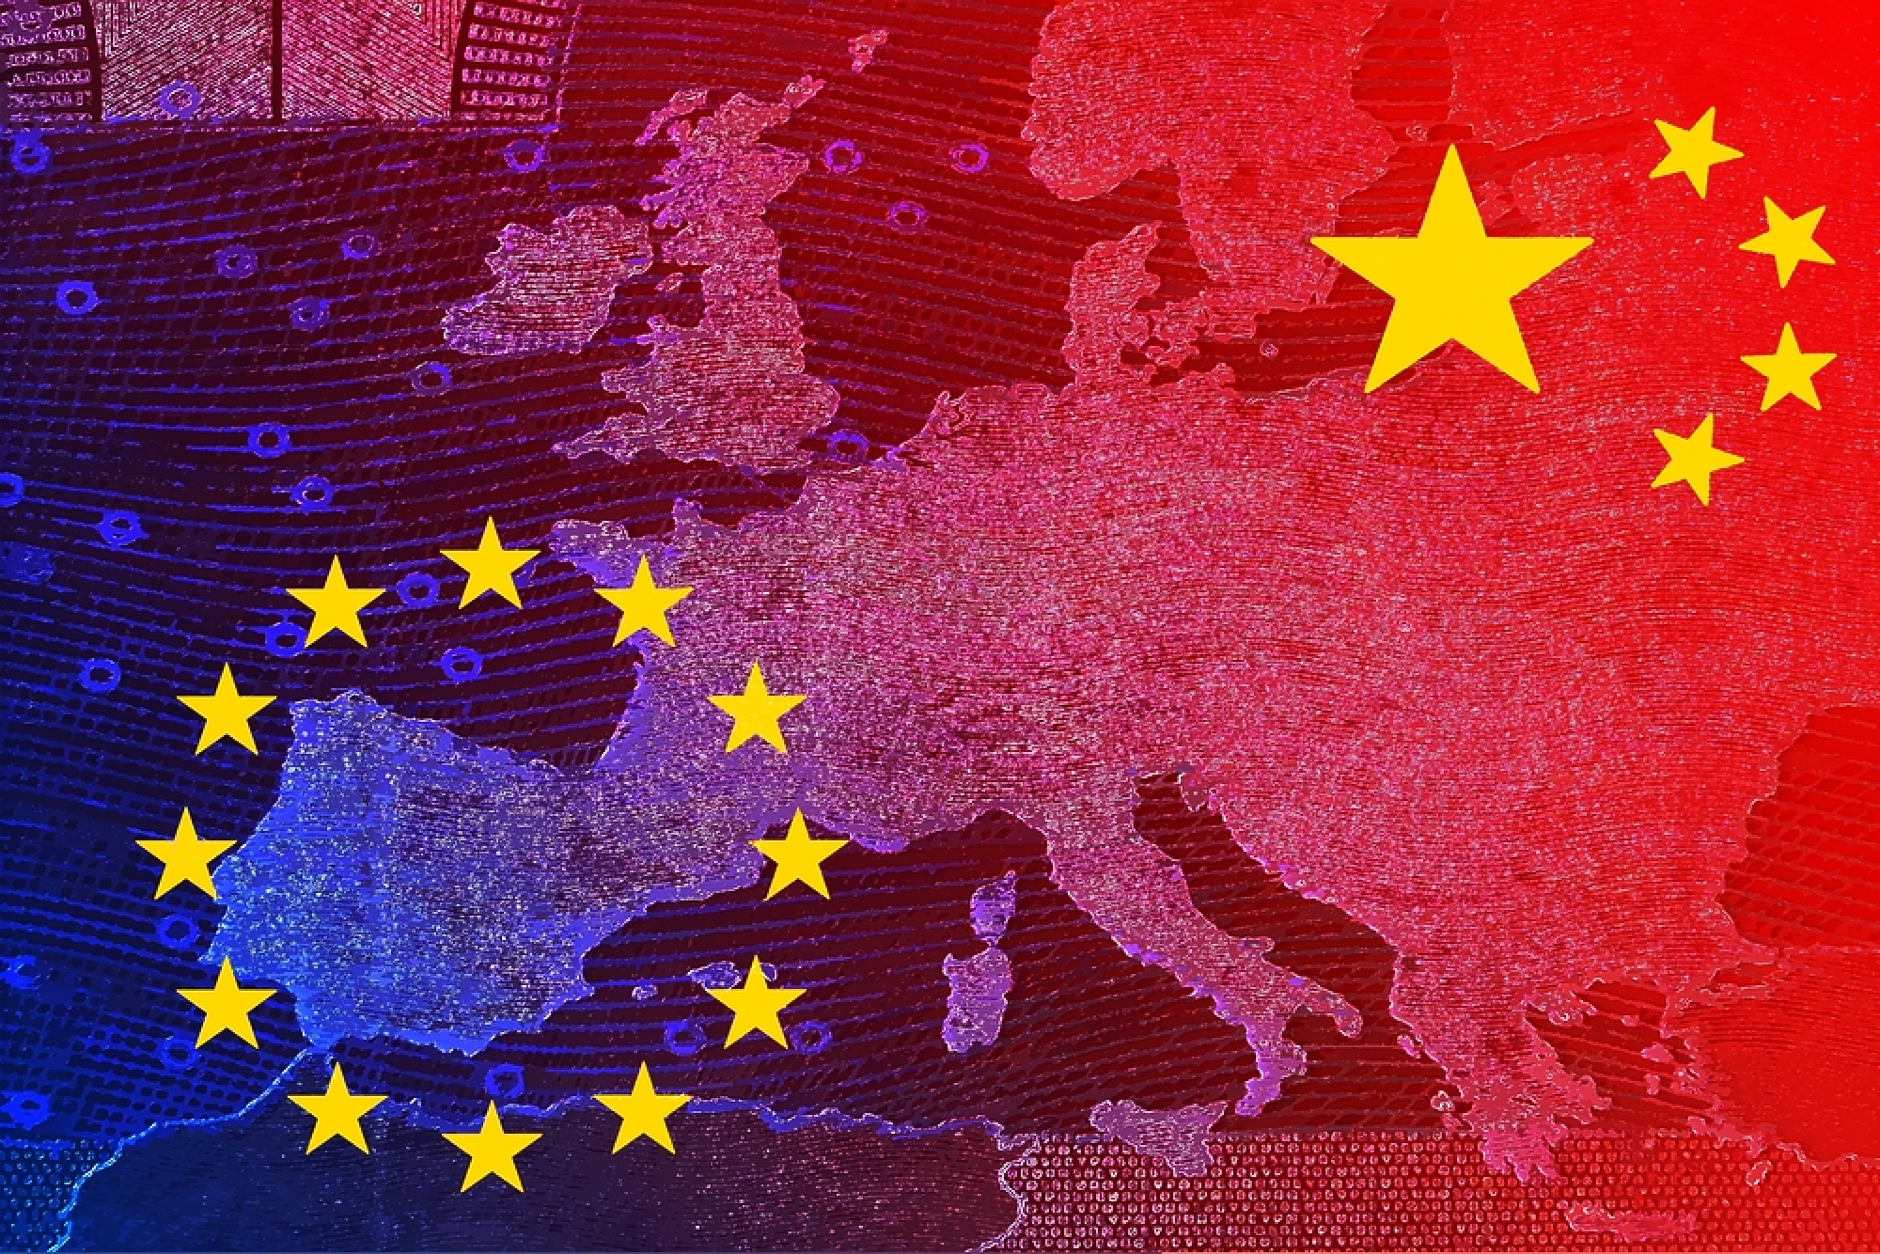 Европейските фирми в Китай са под натиск от бавния икономически ръст и  свръхкапацитета